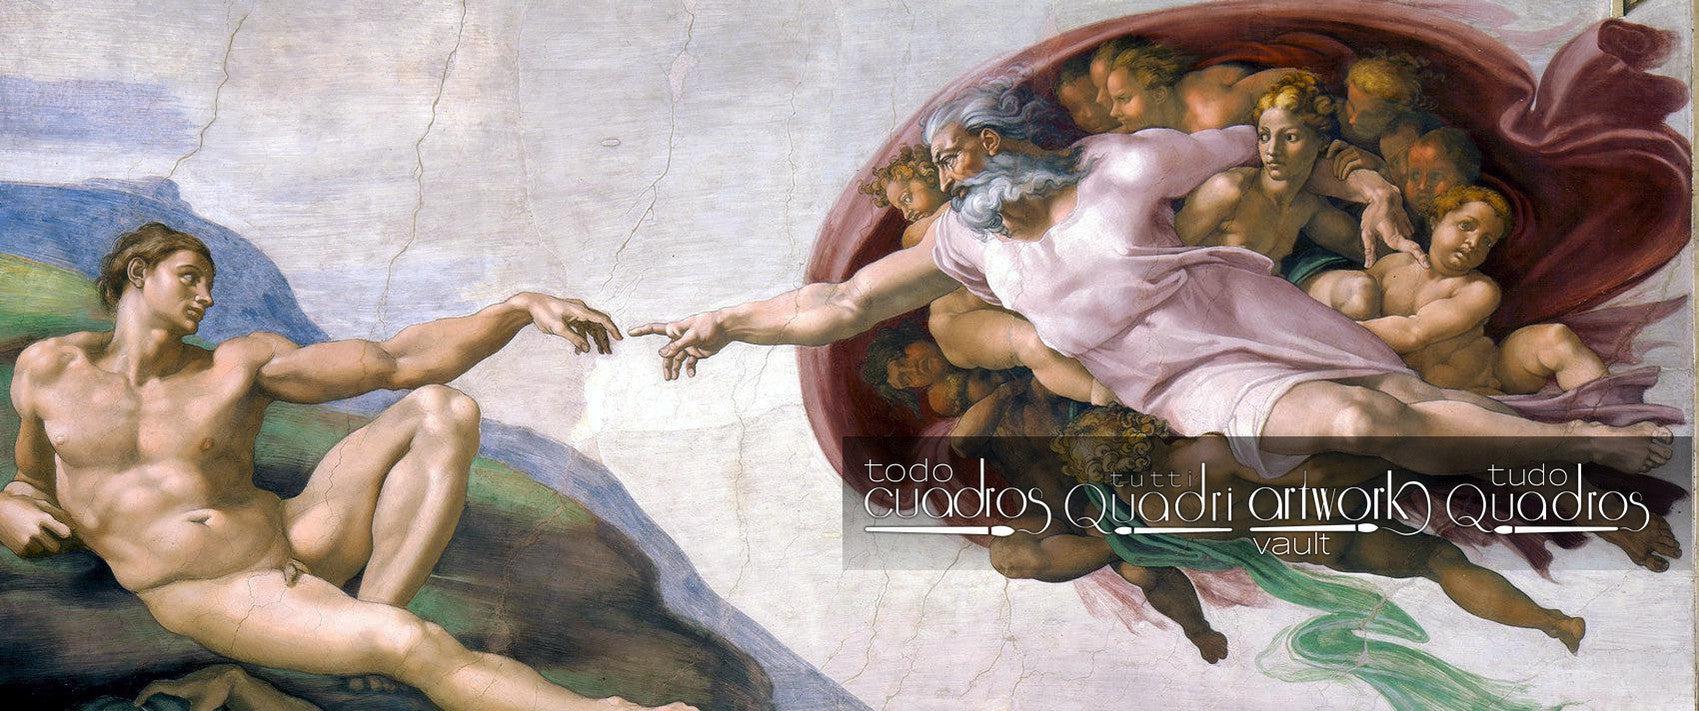 La Creación de Adán, Michelangelo